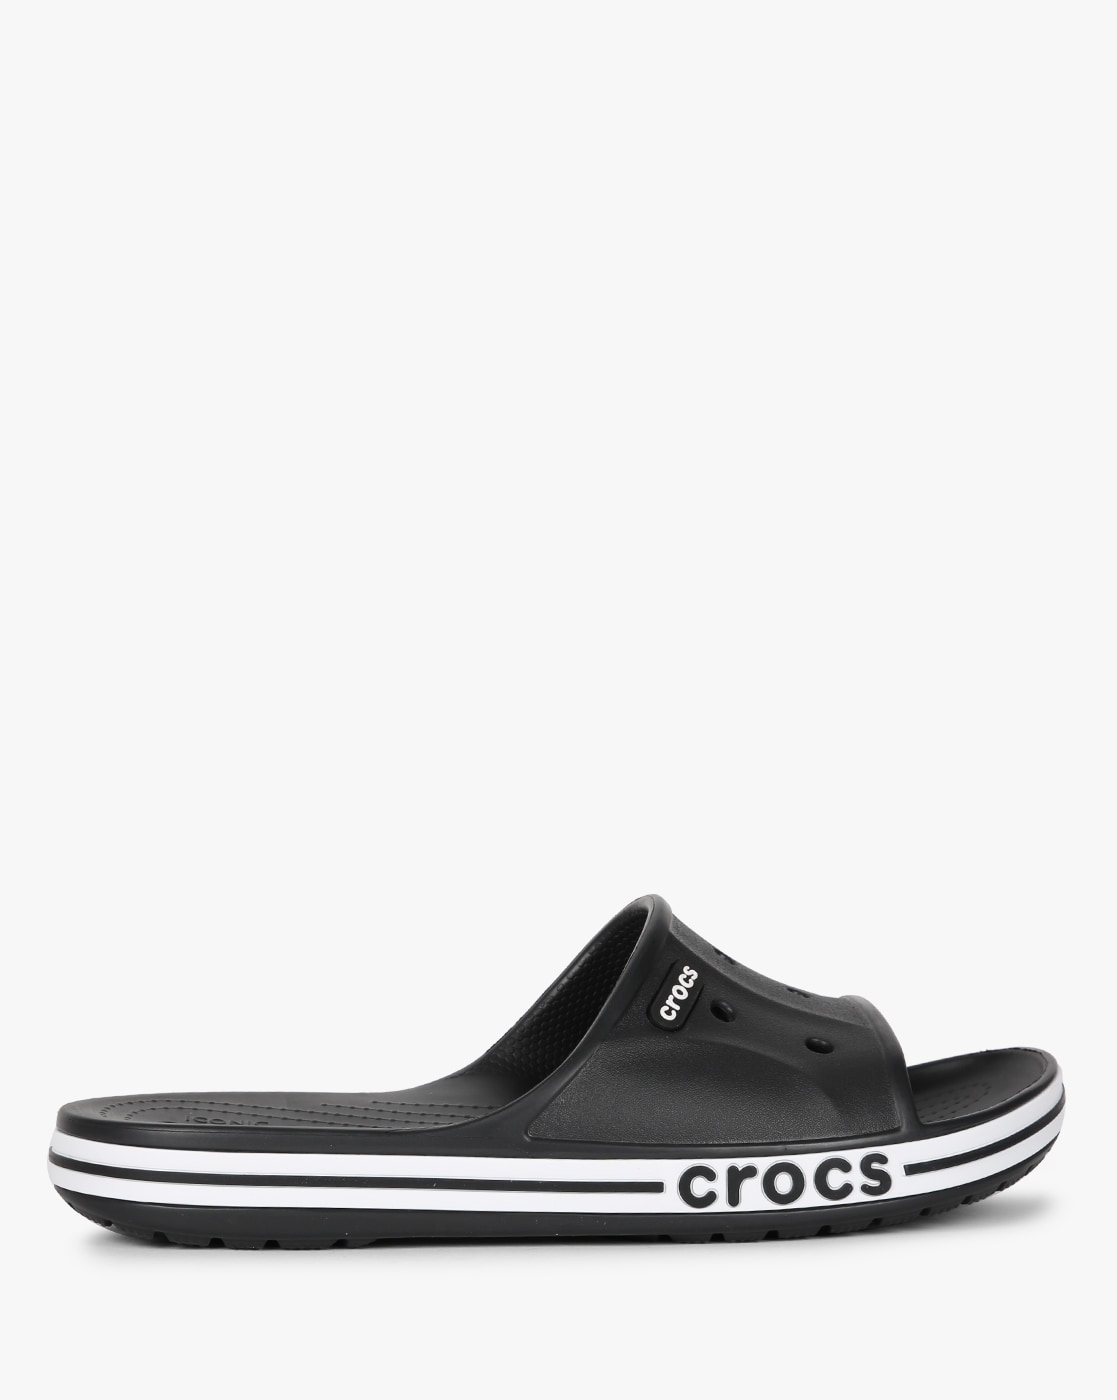 crocs for men slides